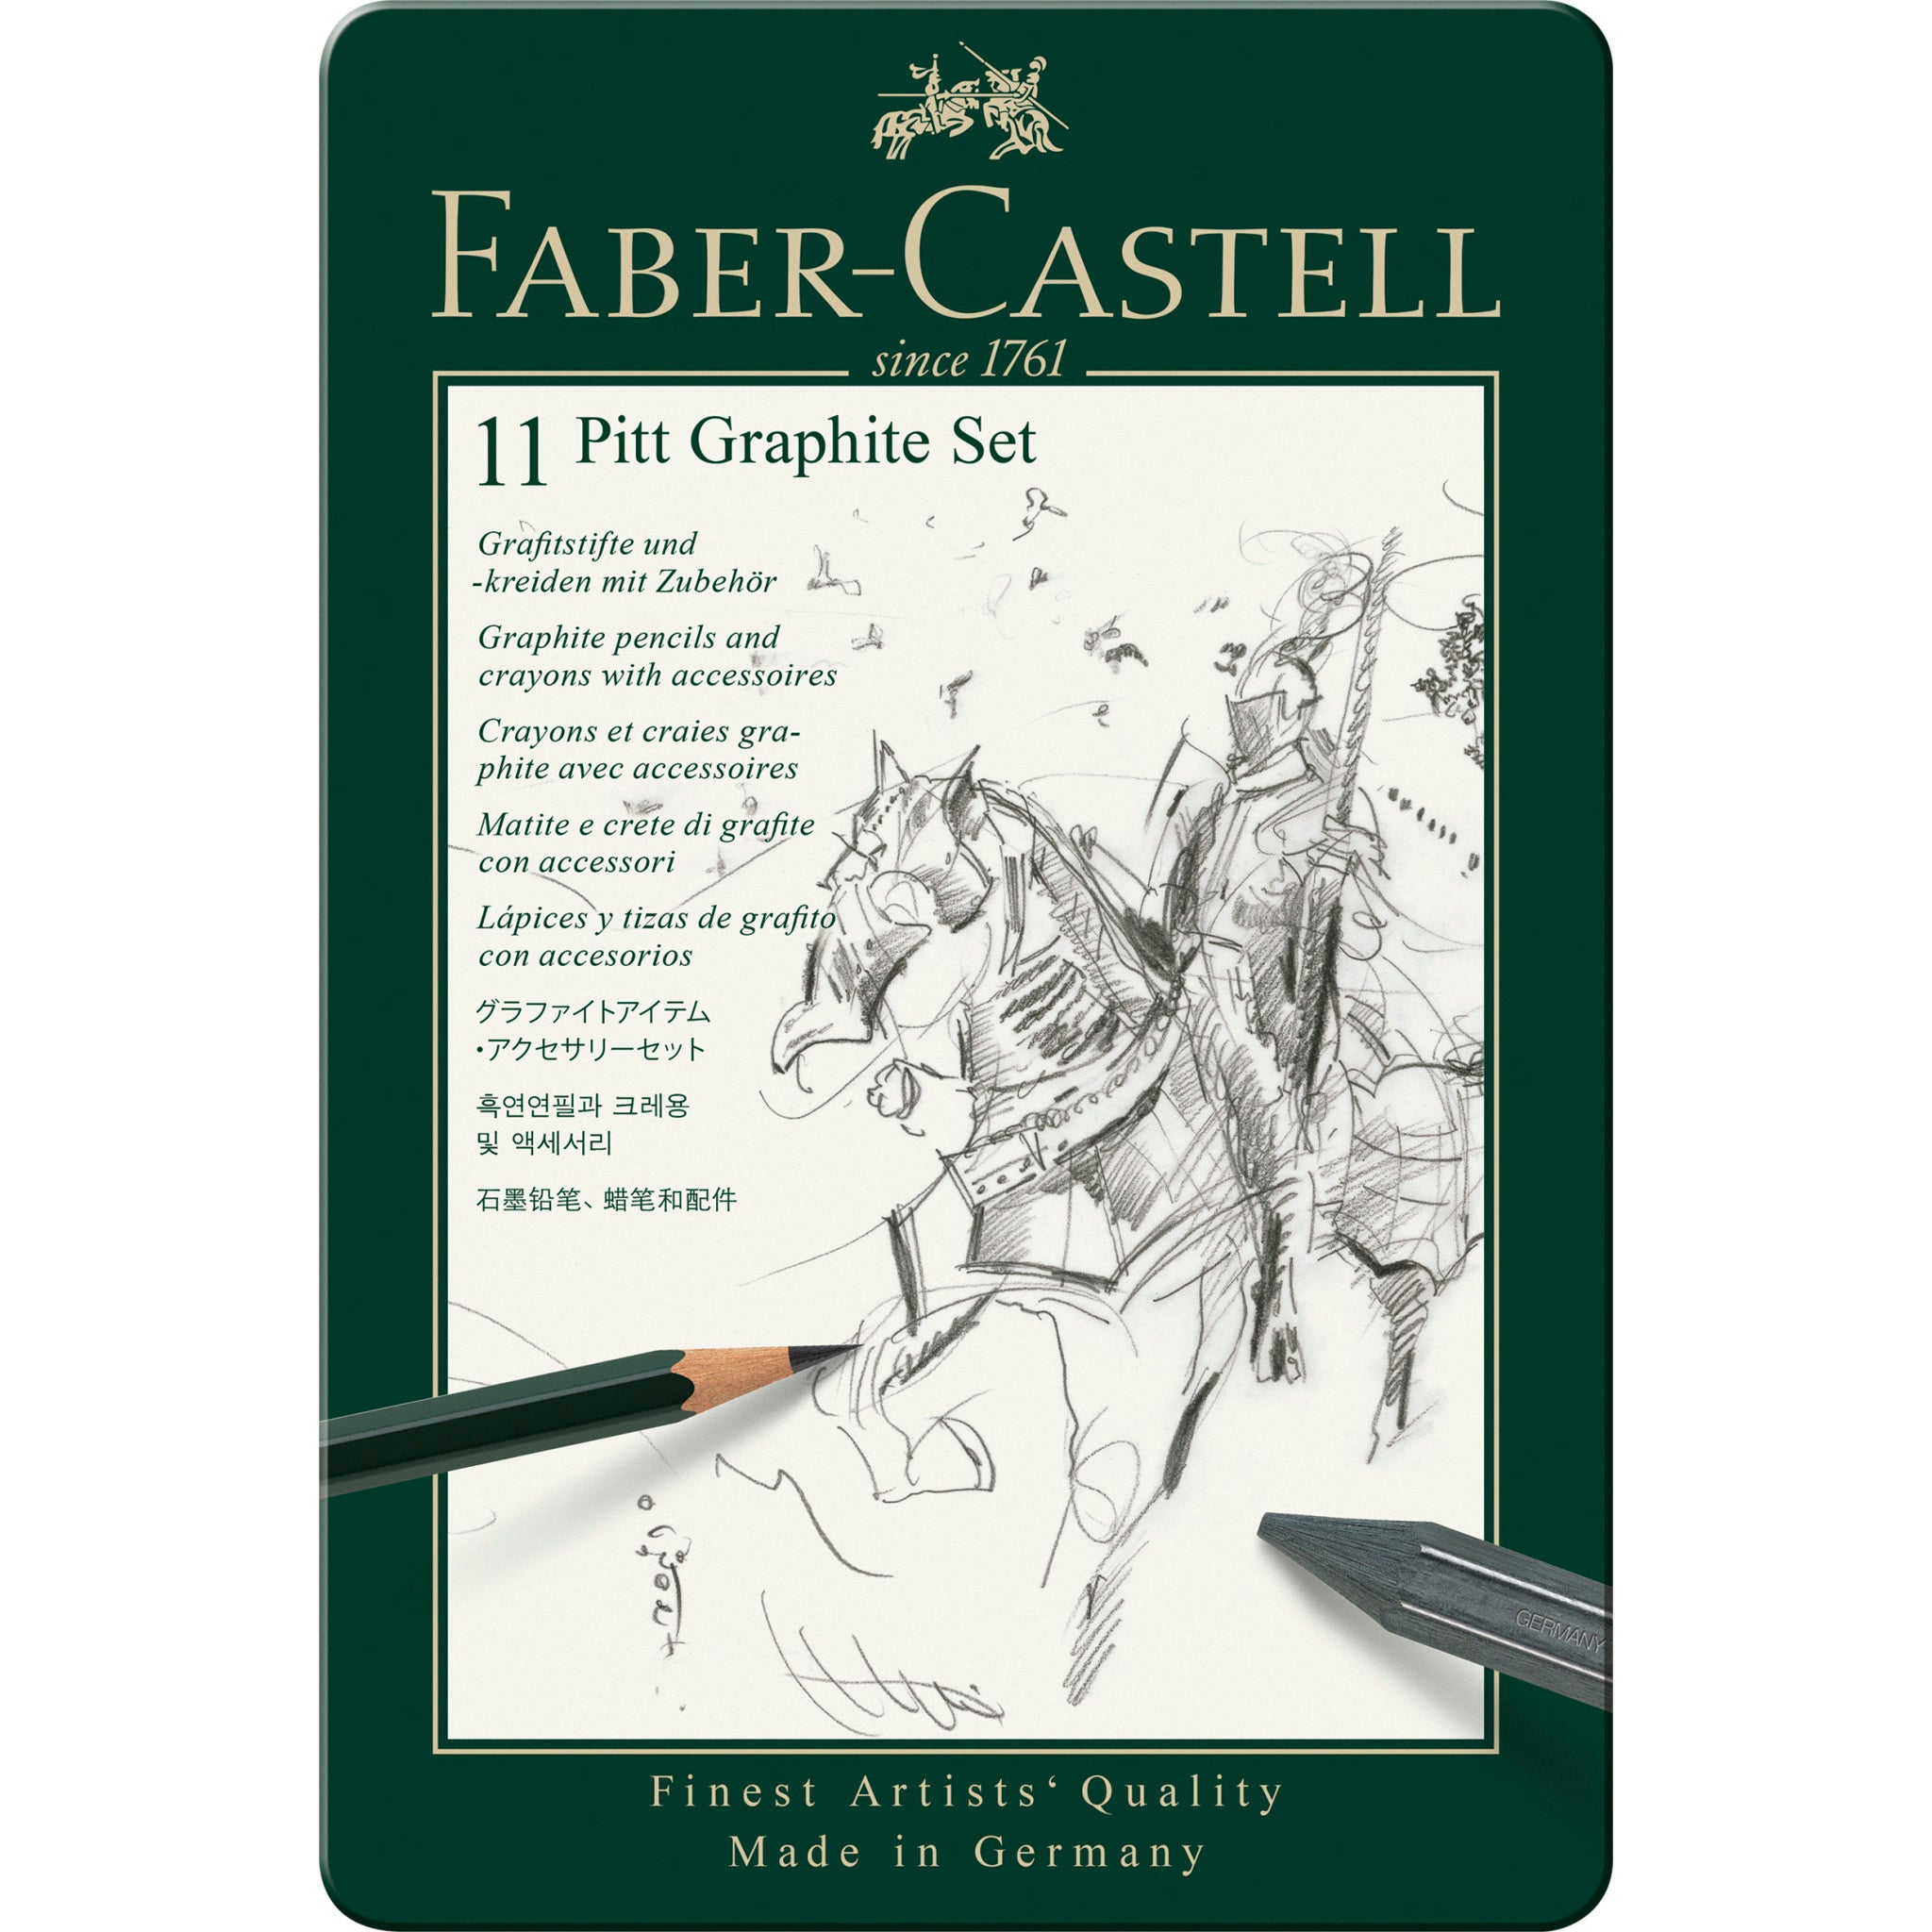 Faber-Castell 11 Piece Pitt Graphite Tin Set